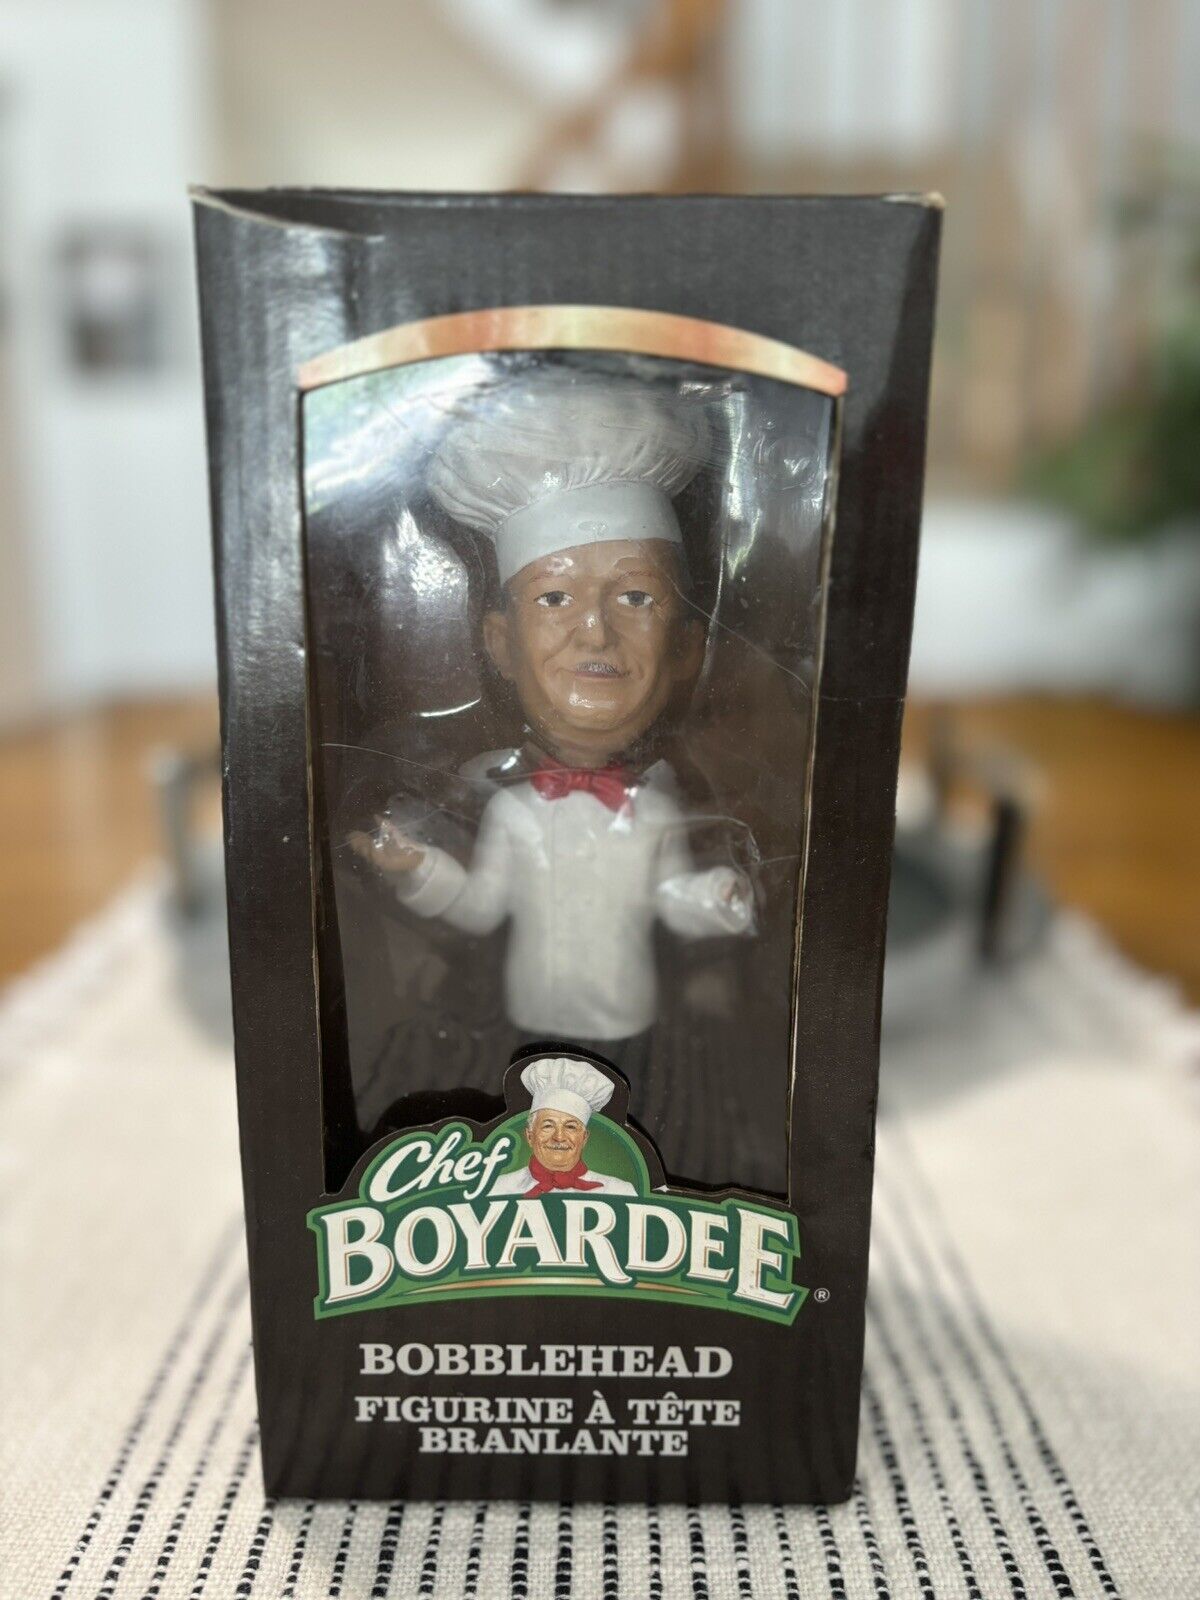 Very Rare - Chef Boyardee Bobblehead - Limited Edition Release Canada 2014